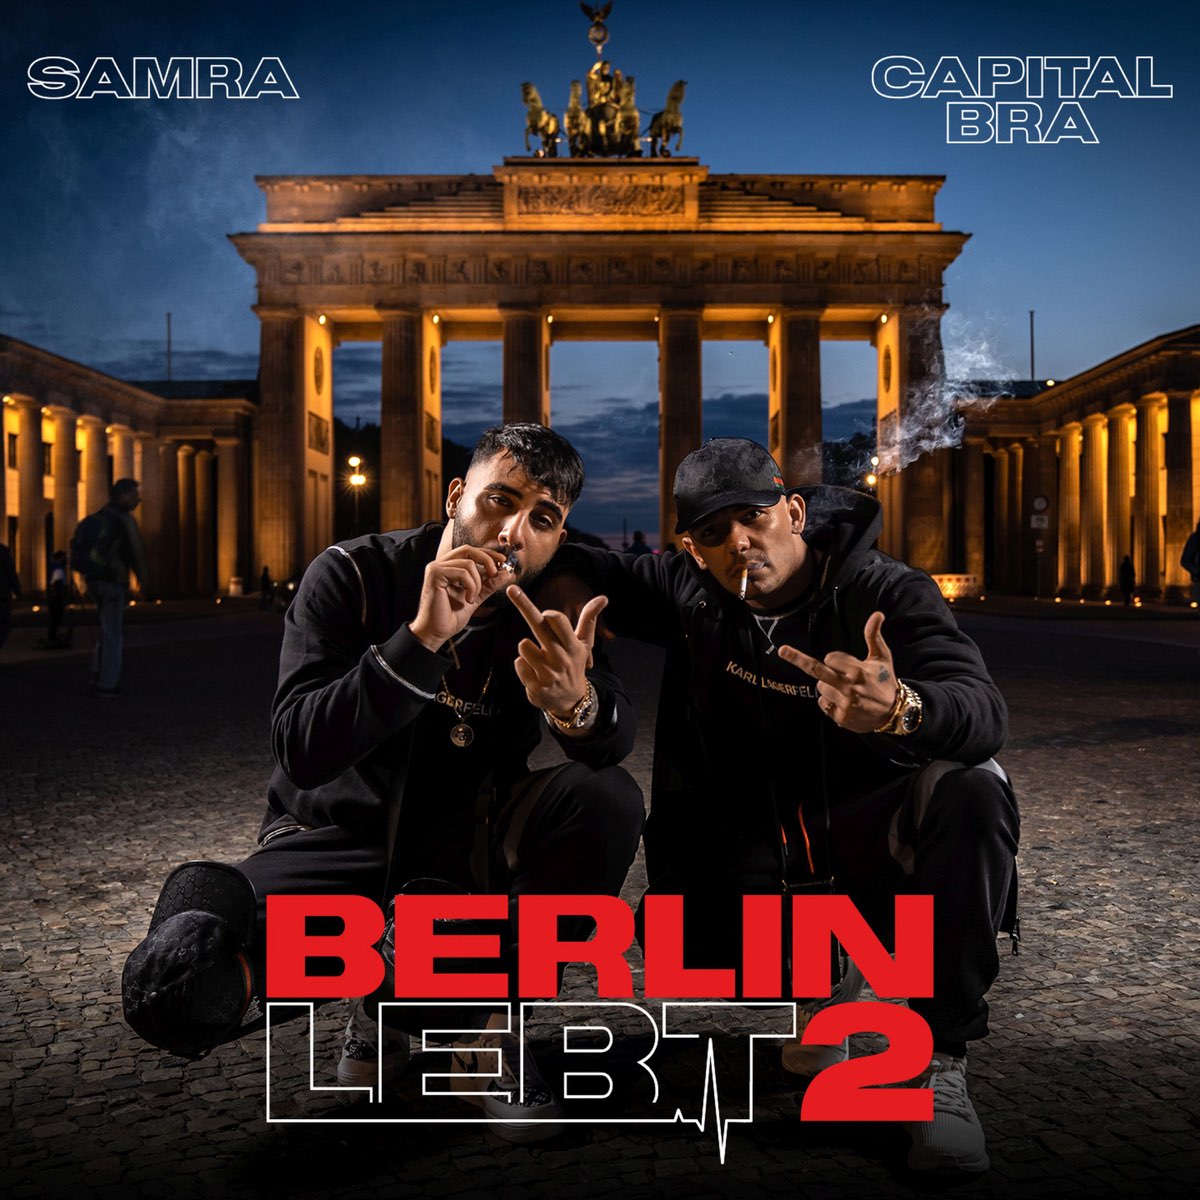 Capital Bra & Samra adlı sanatçının Berlin lebt 2 albümü Apple Music'te